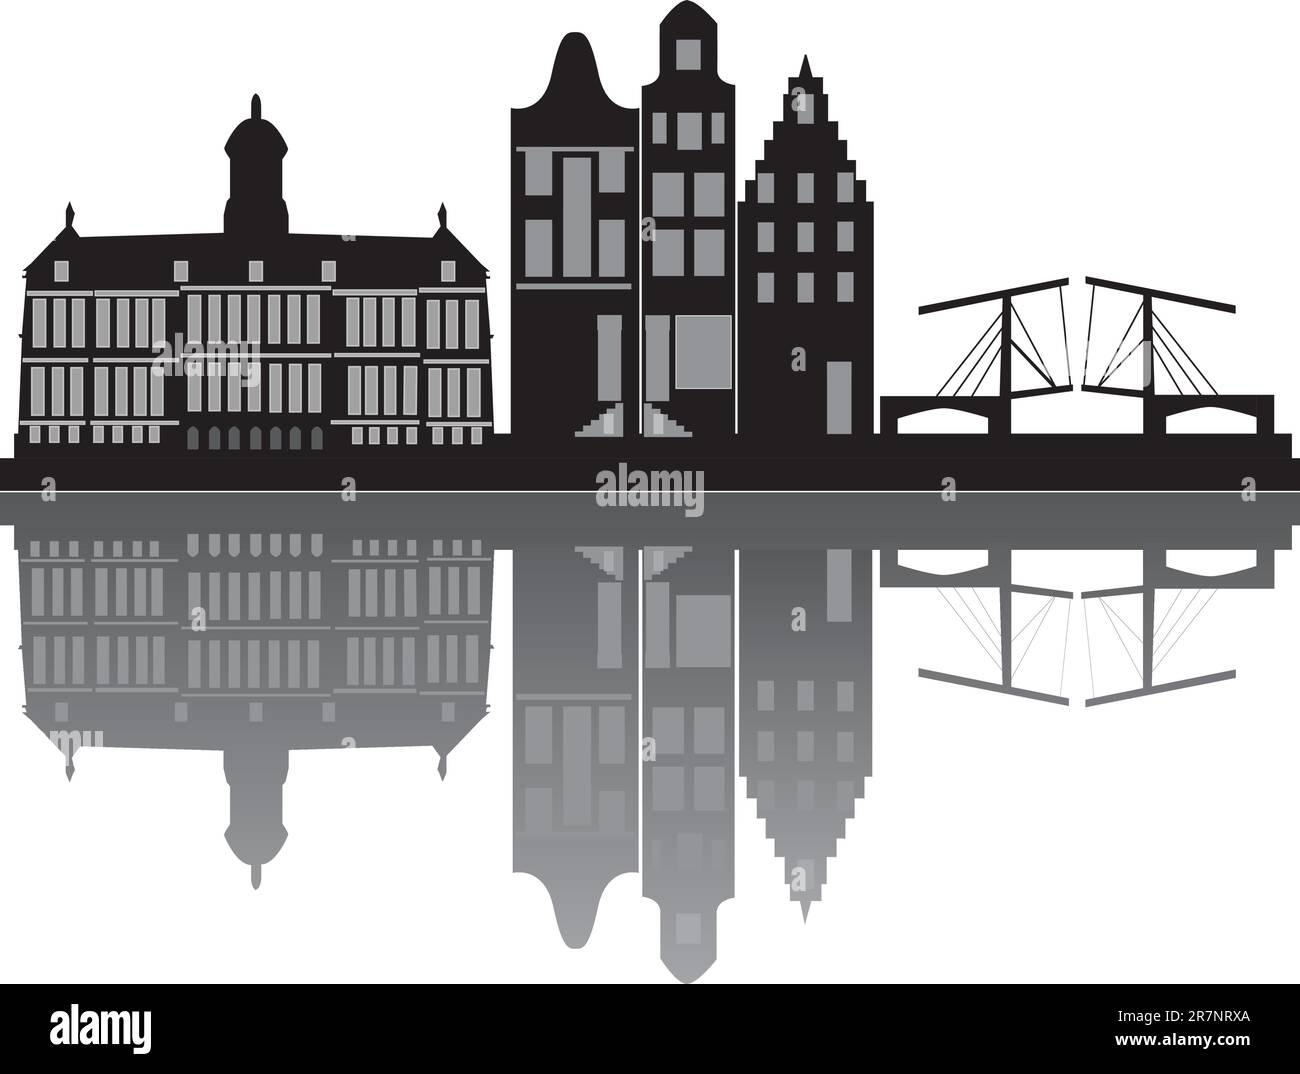 Skyline von Amsterdam mit Gebäuden und Brücke Stock Vektor